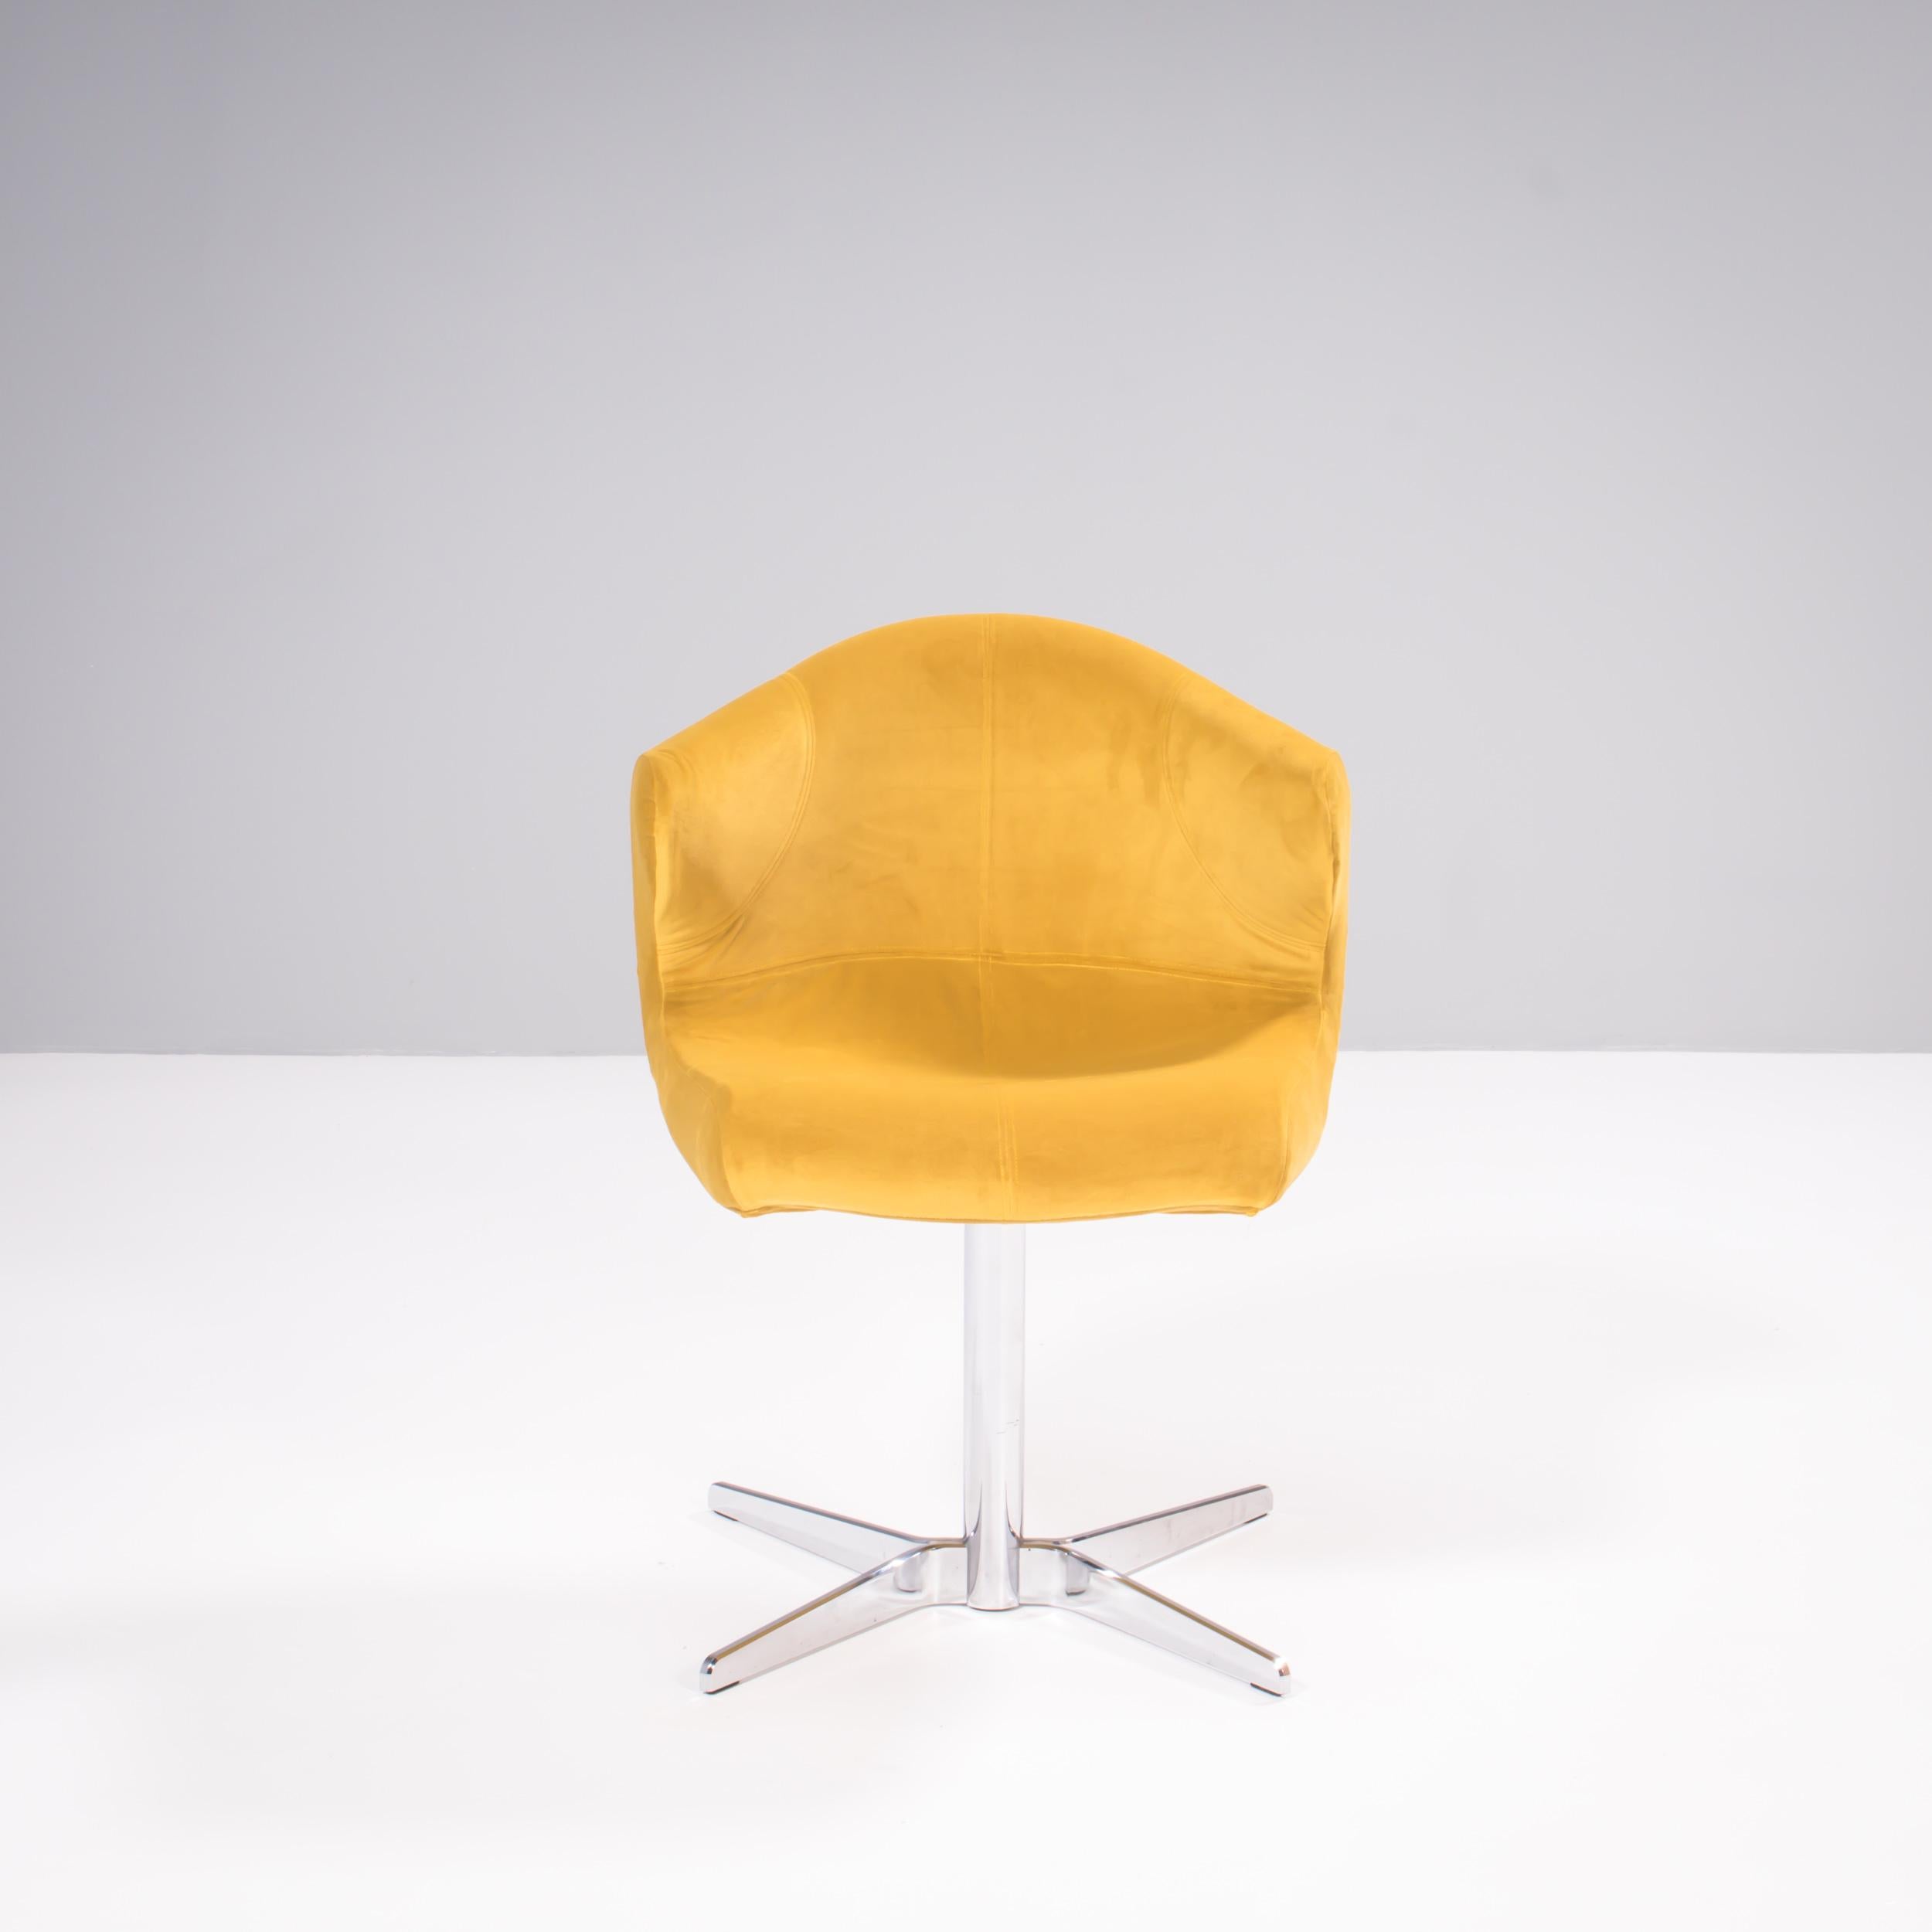 Conçue à l'origine par Emmanuel Dietrich pour Ligne Roset en 2006, la chaise Alster allie le design classique du milieu du siècle à une touche contemporaine.

Dotée d'une silhouette incurvée, la chaise pivote à 360 degrés sur sa base en chrome